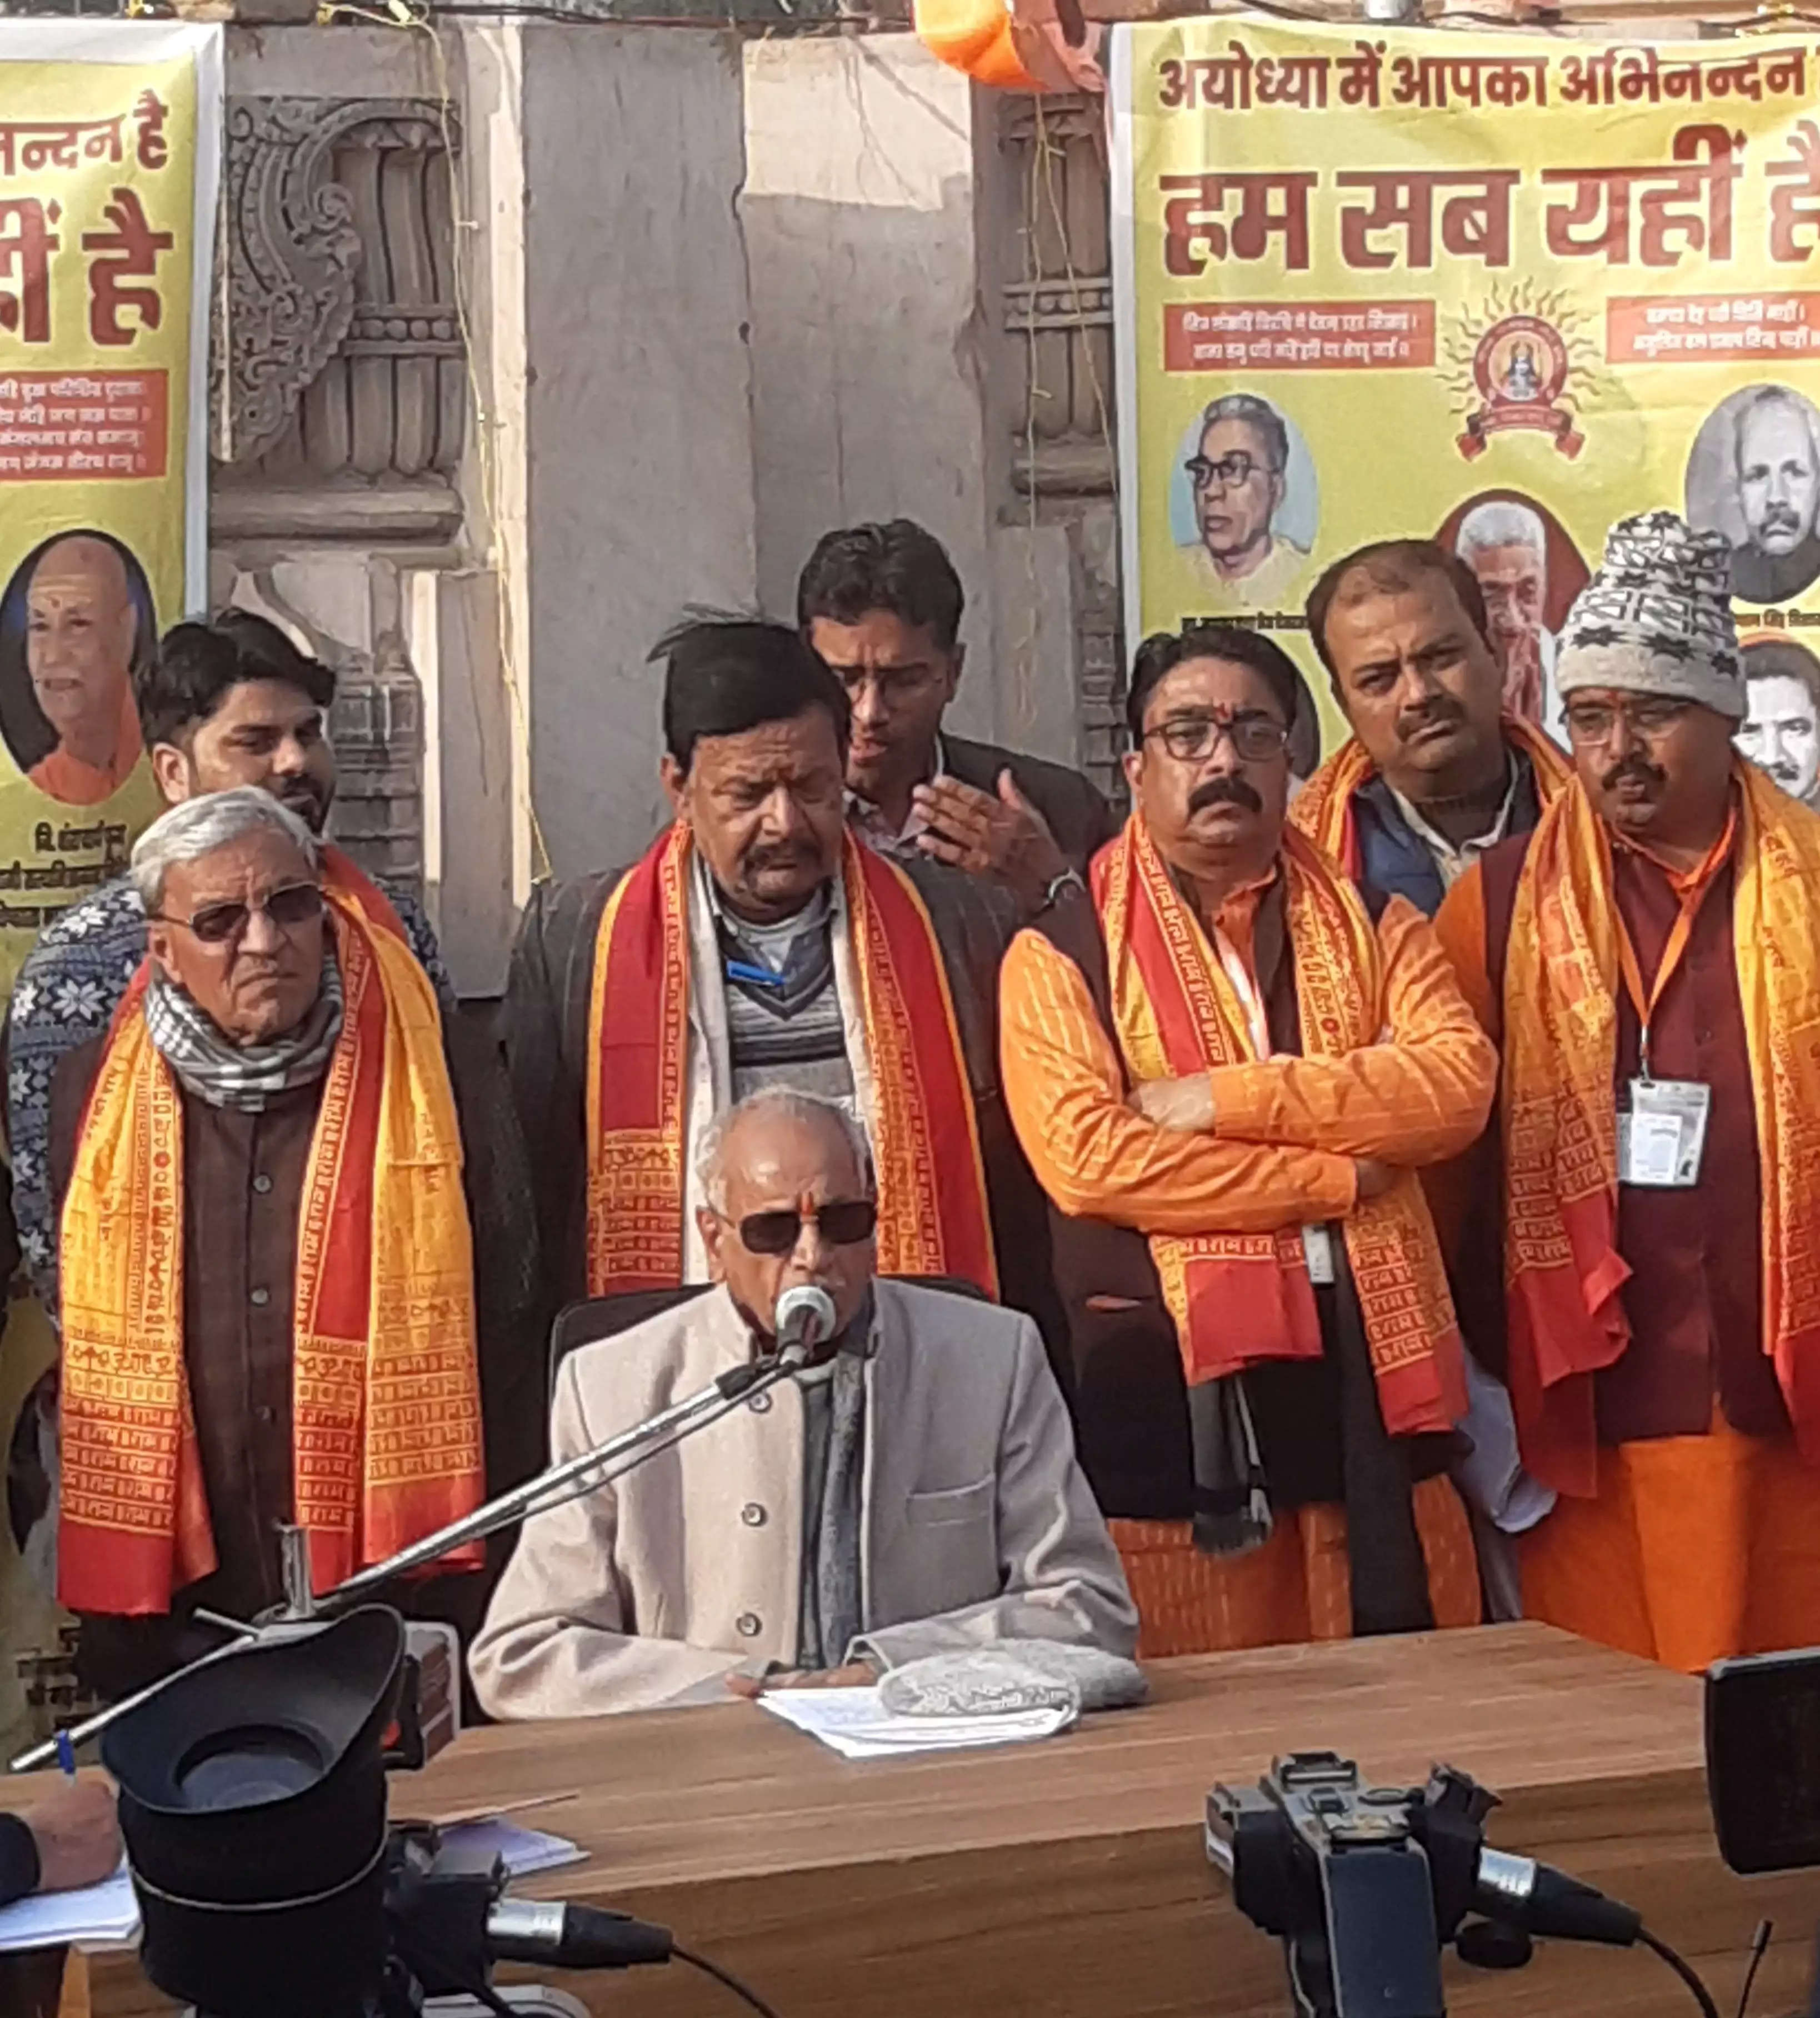 Ayodhya News: चम्पत राय ने कहा- राम मंदिर के प्राण प्रतिष्ठा समारोह की सभी तैयारियां पूरी